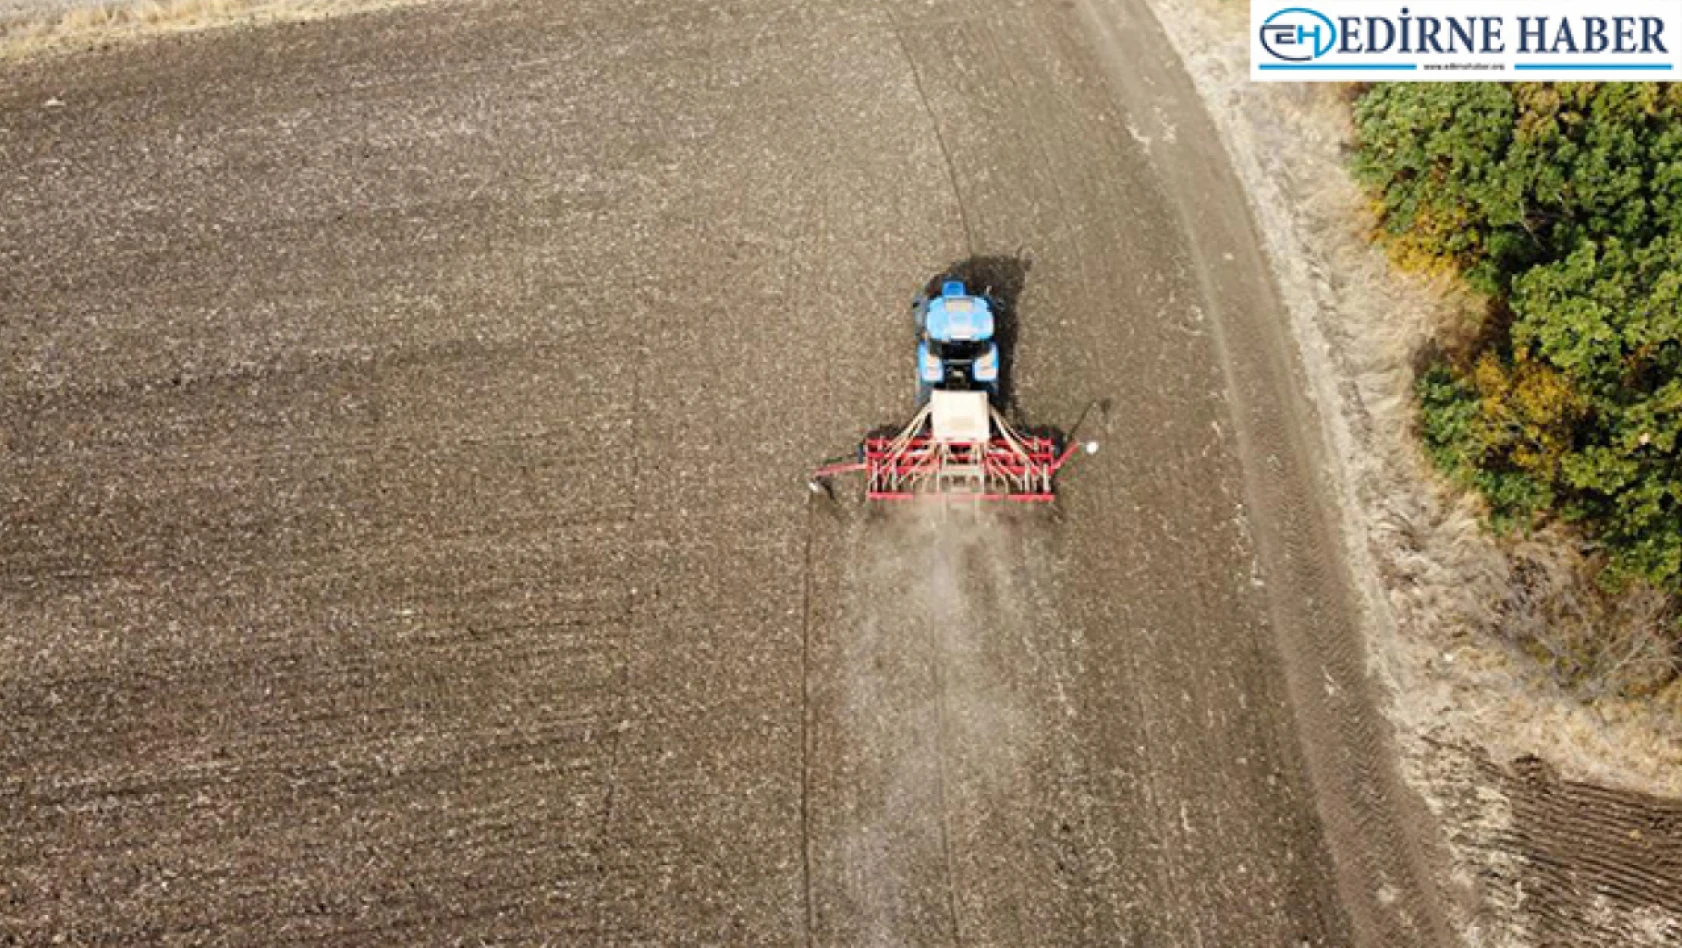 Edirne'de kuraklık tehlikesine rağmen çiftçiler buğday ekimini sürdürüyor